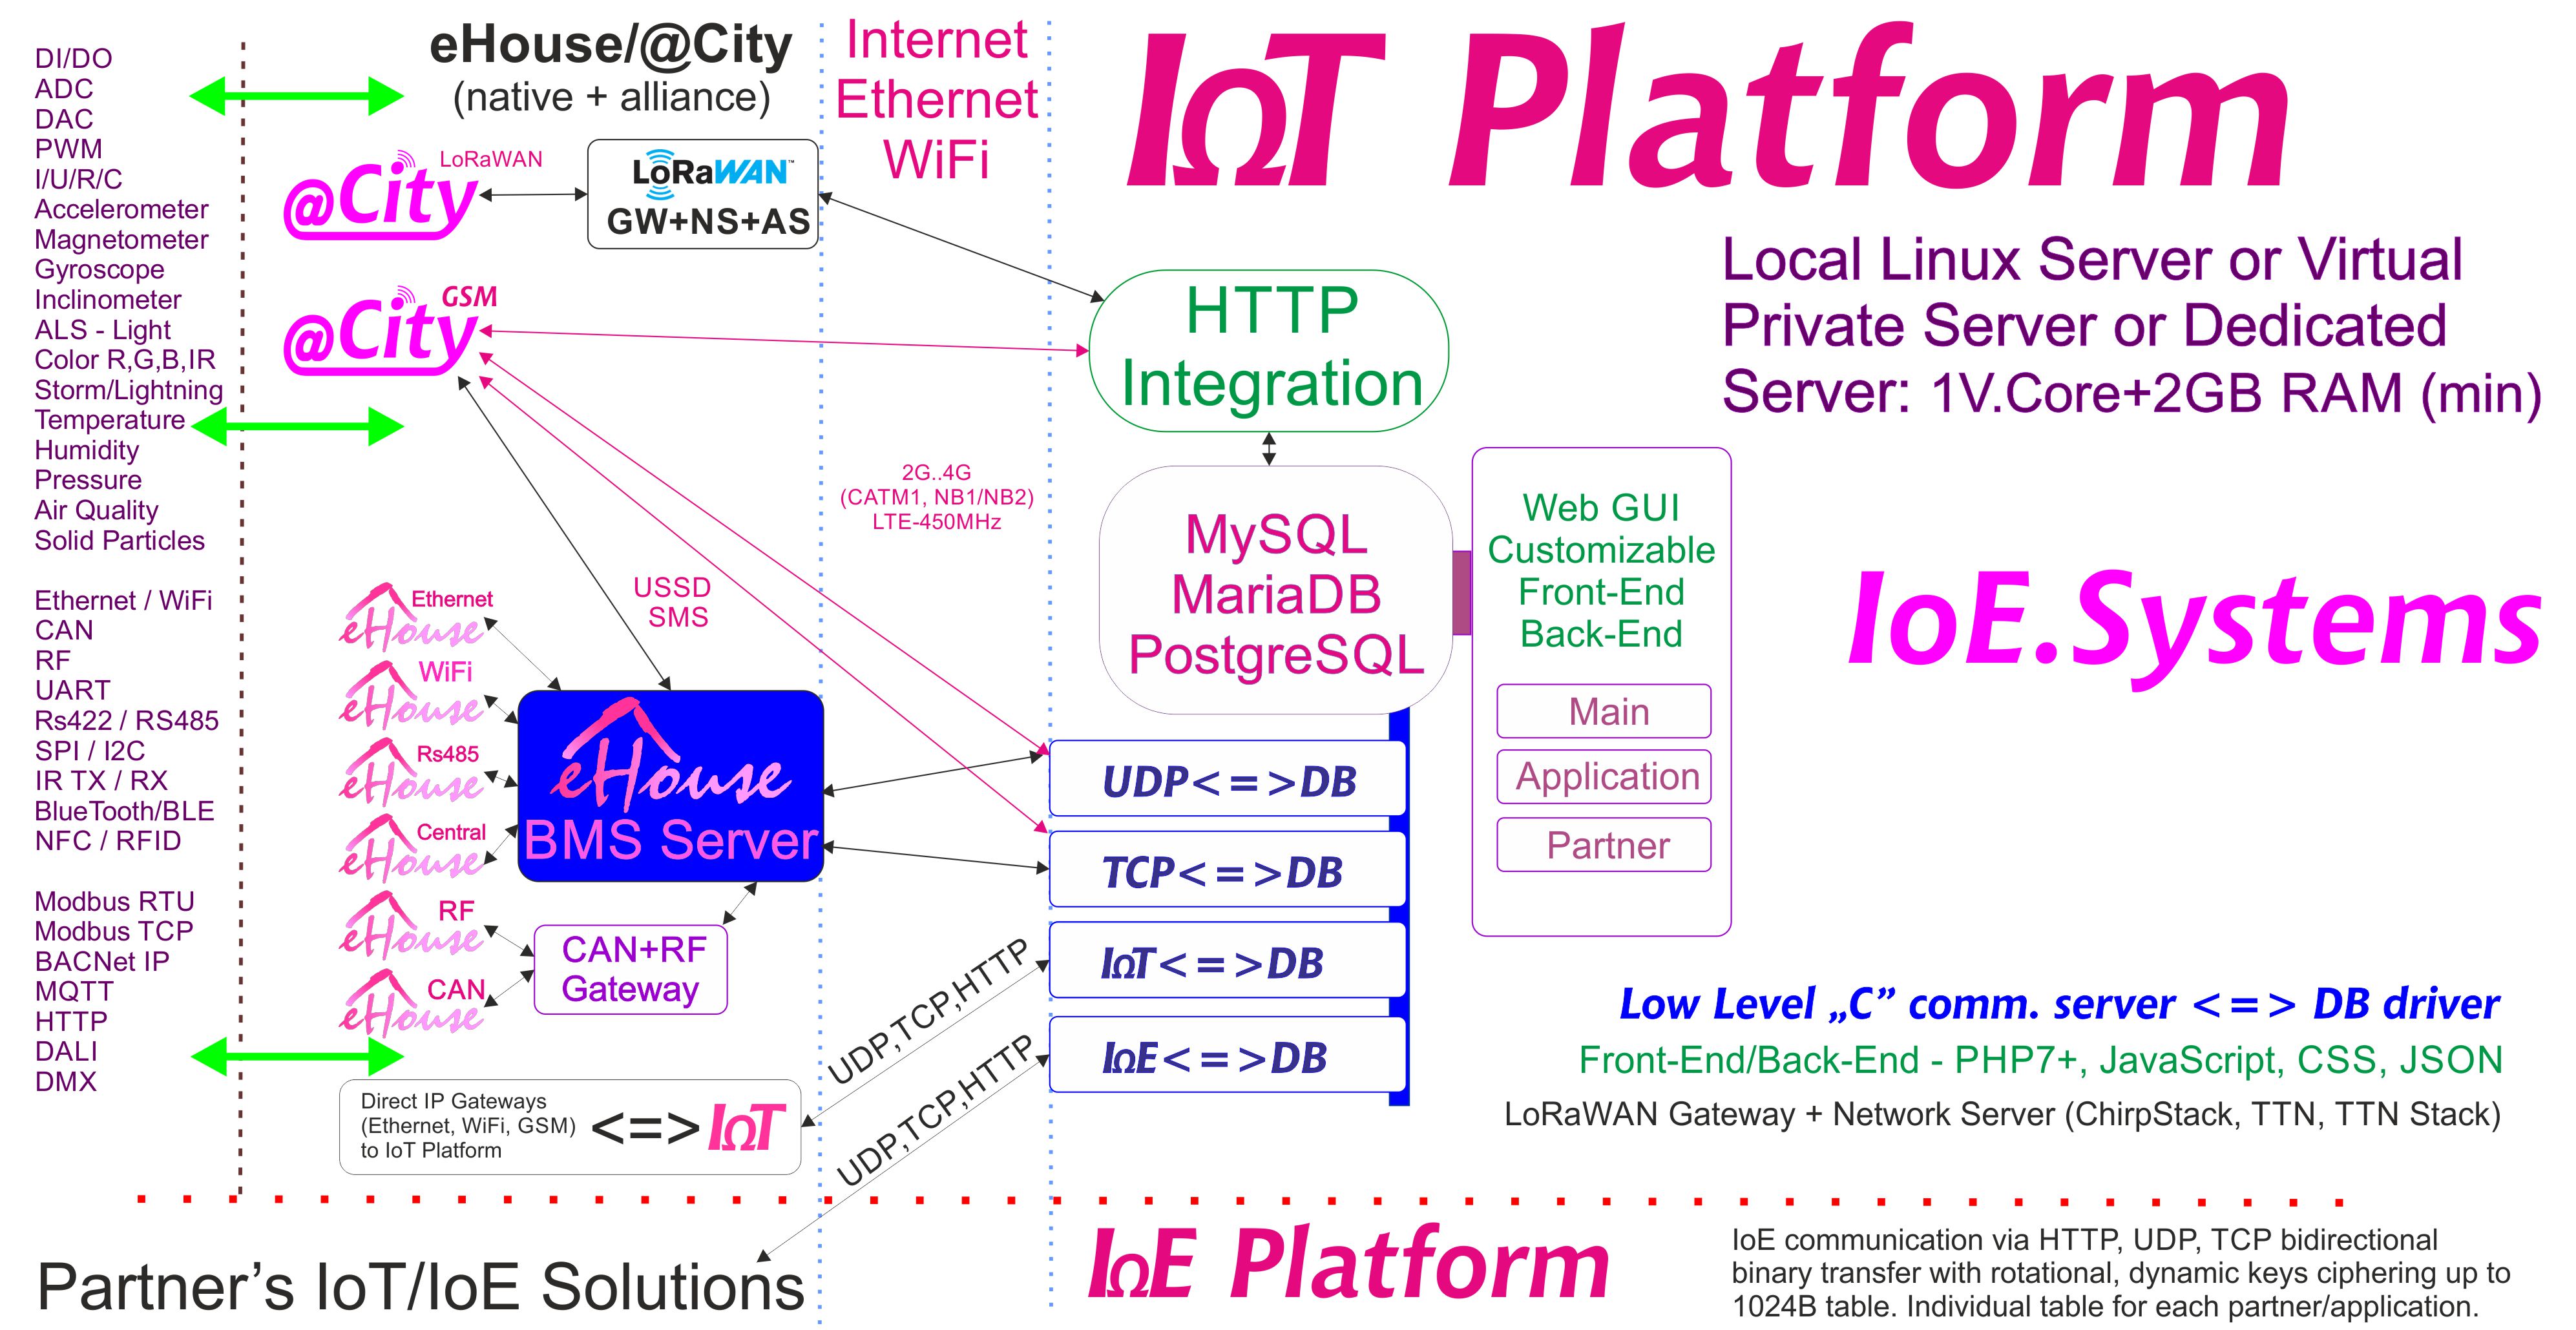 eHouse, eCity Server Software BAS, BMS, IoE, IoT Systems ug Platform